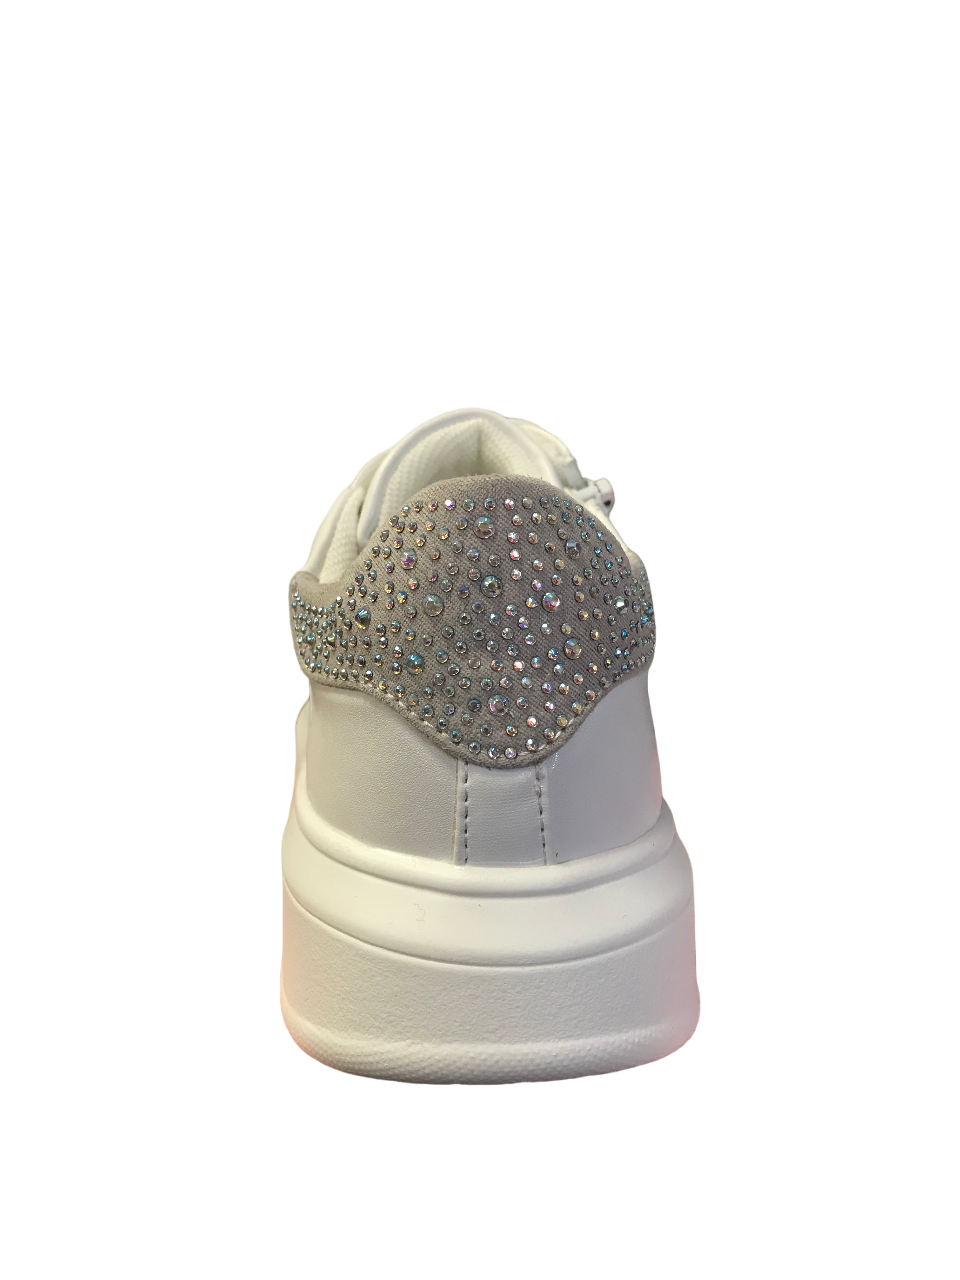 CafèNoir sneakers da ragazza con tomaia stampata laccio e cerniera laterale C-2080 white-silver